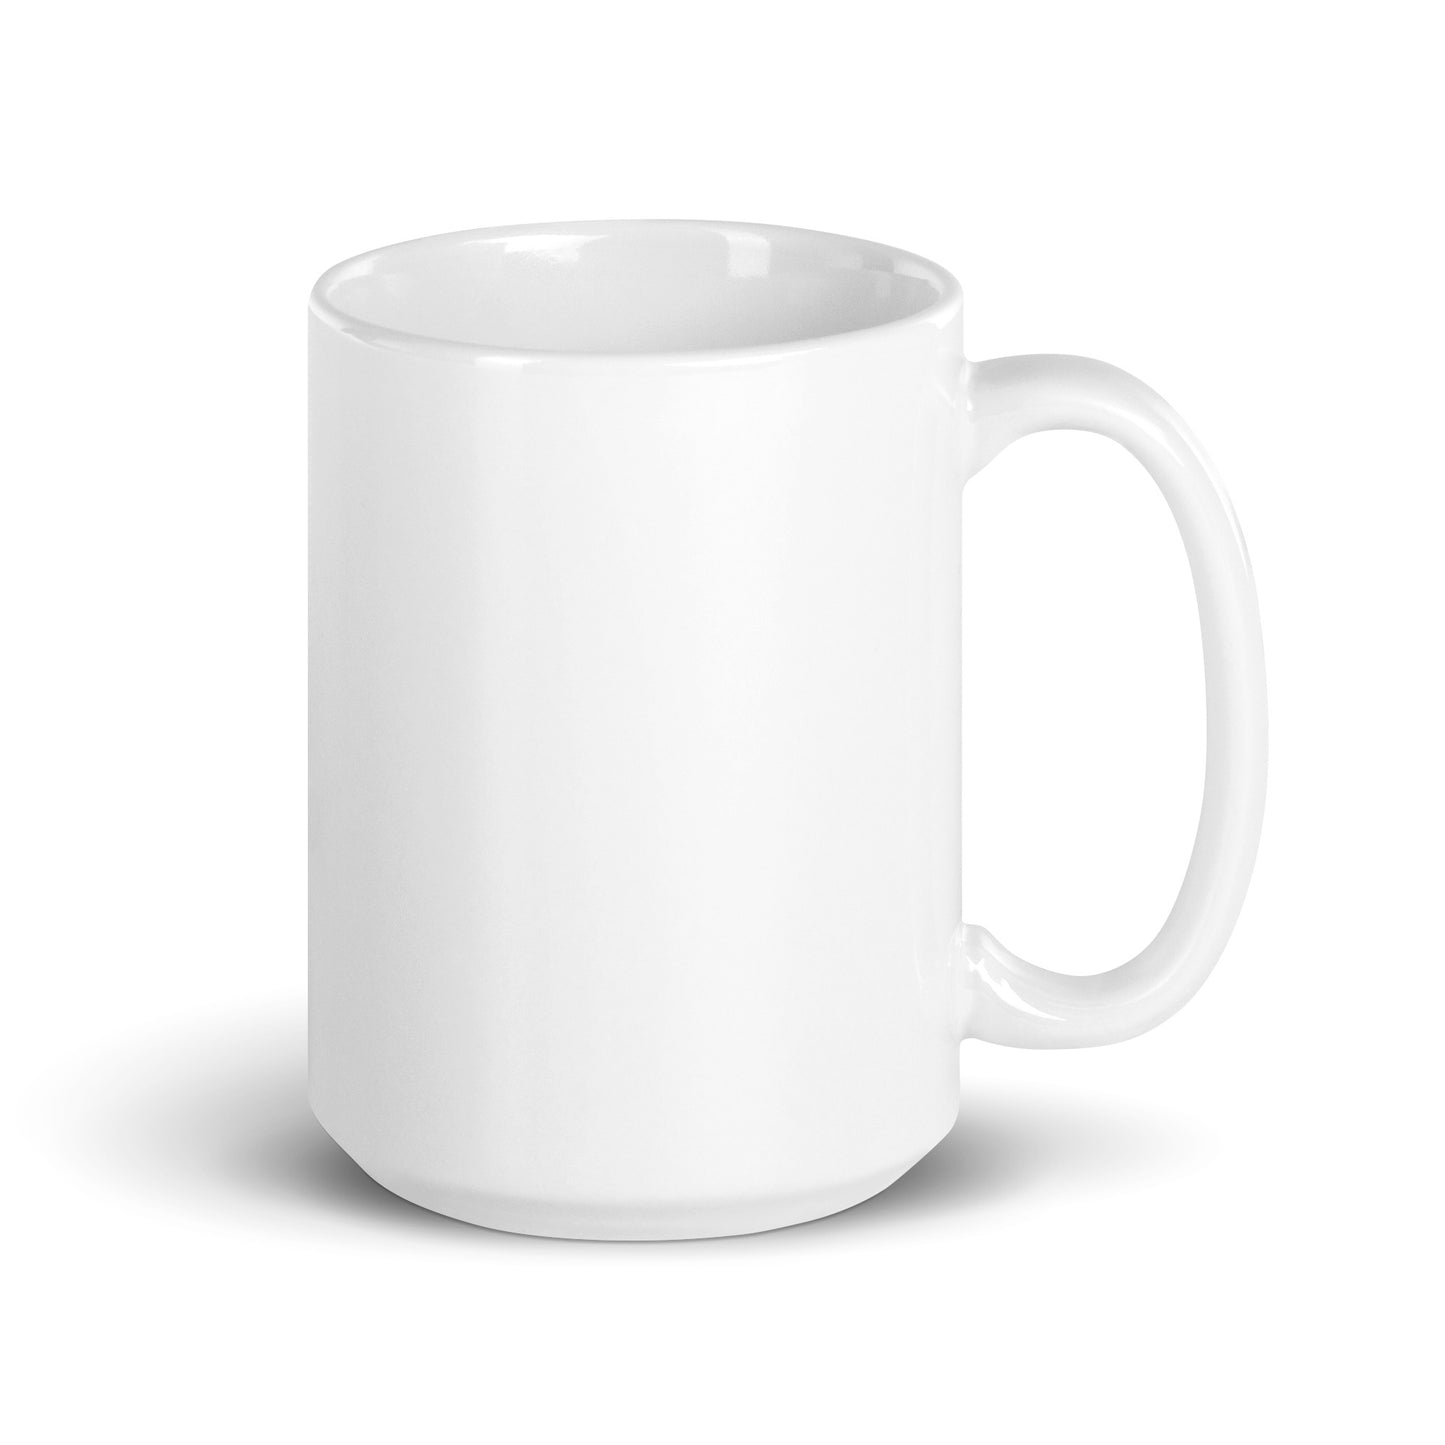 12 Principles of Animation mug